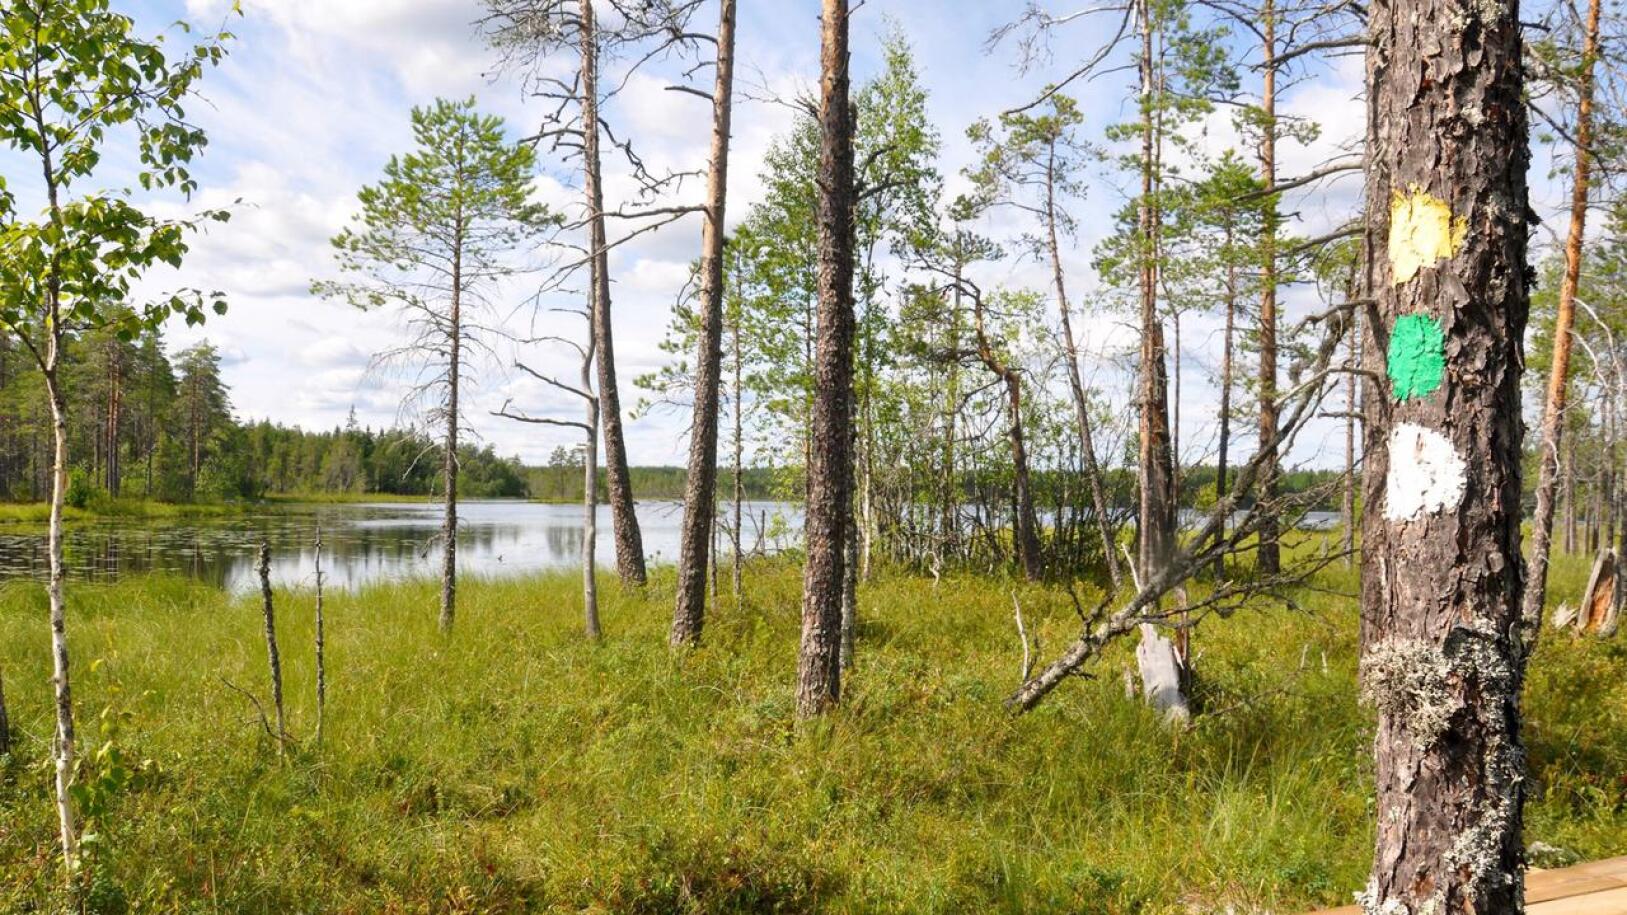 Metsähallituksen tiedotteessa luvataan, että pitkospuiden uusiminen Salamajärven kansallispuistossa jatkuu. Lisäksi puistossa tehdään kävijätutkimus. 